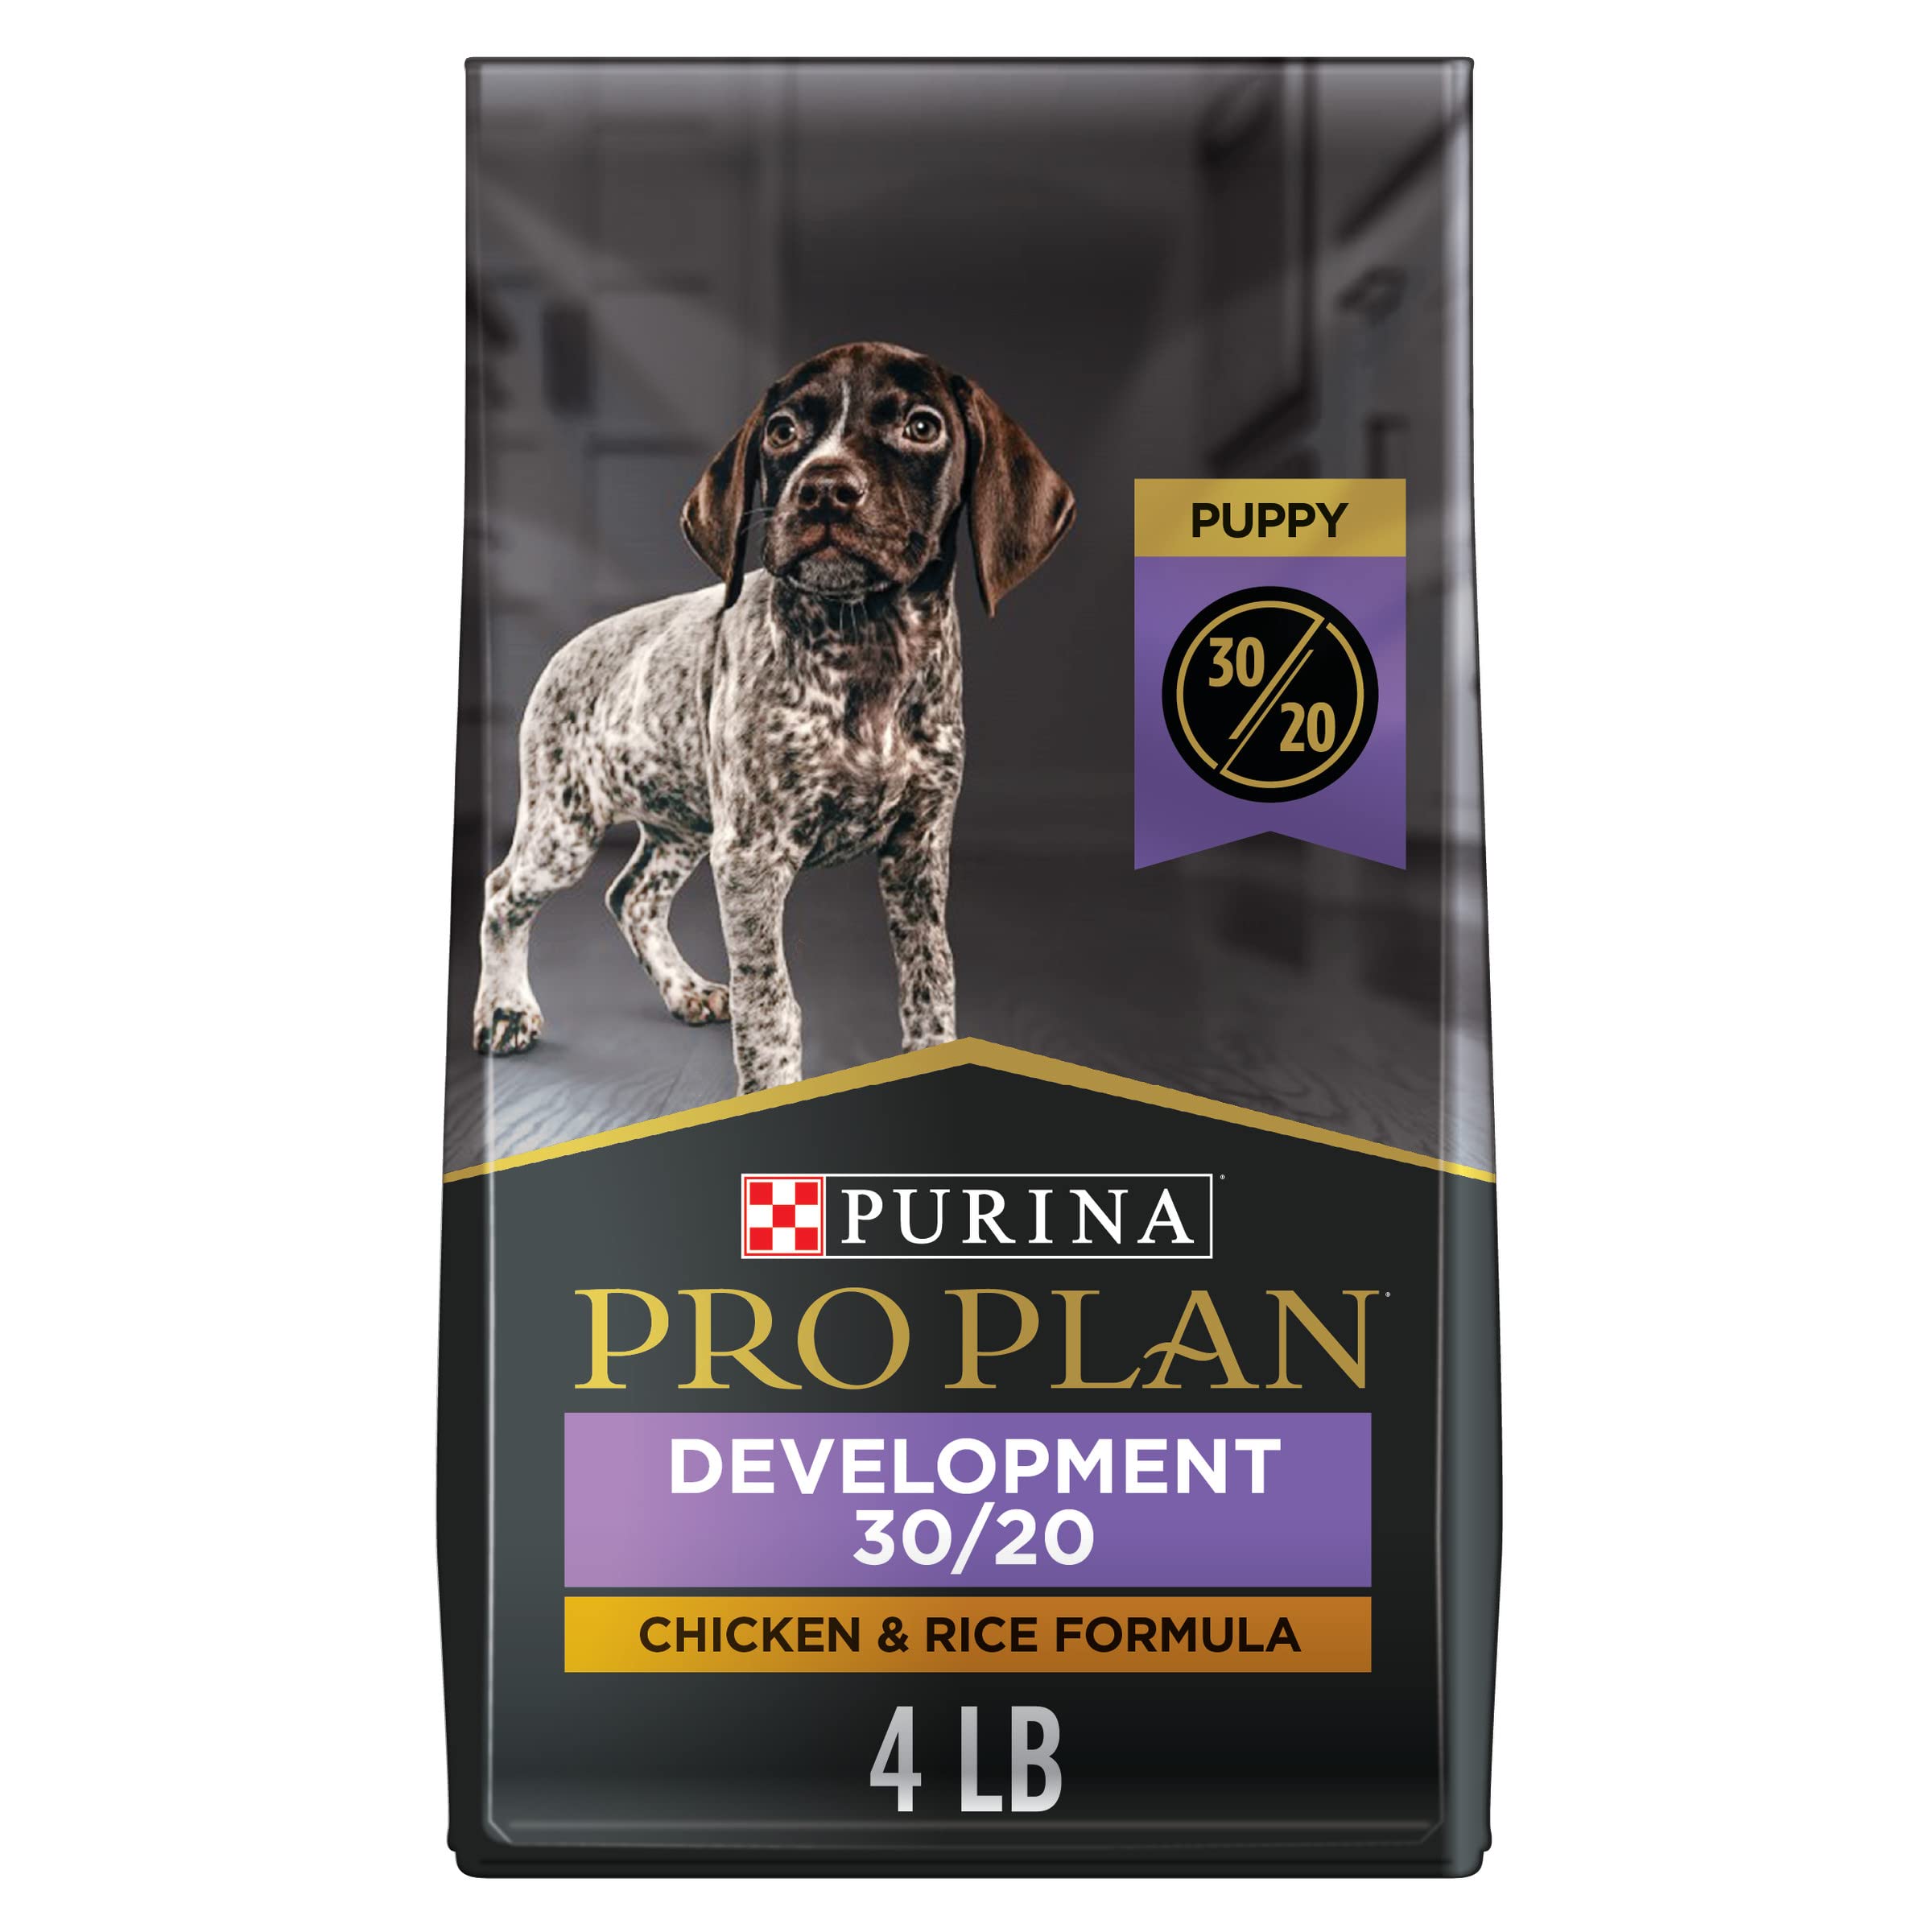 Purina Pro Plan नए पिल्ले का विकास - उच्च प्रोटीन वाला ...